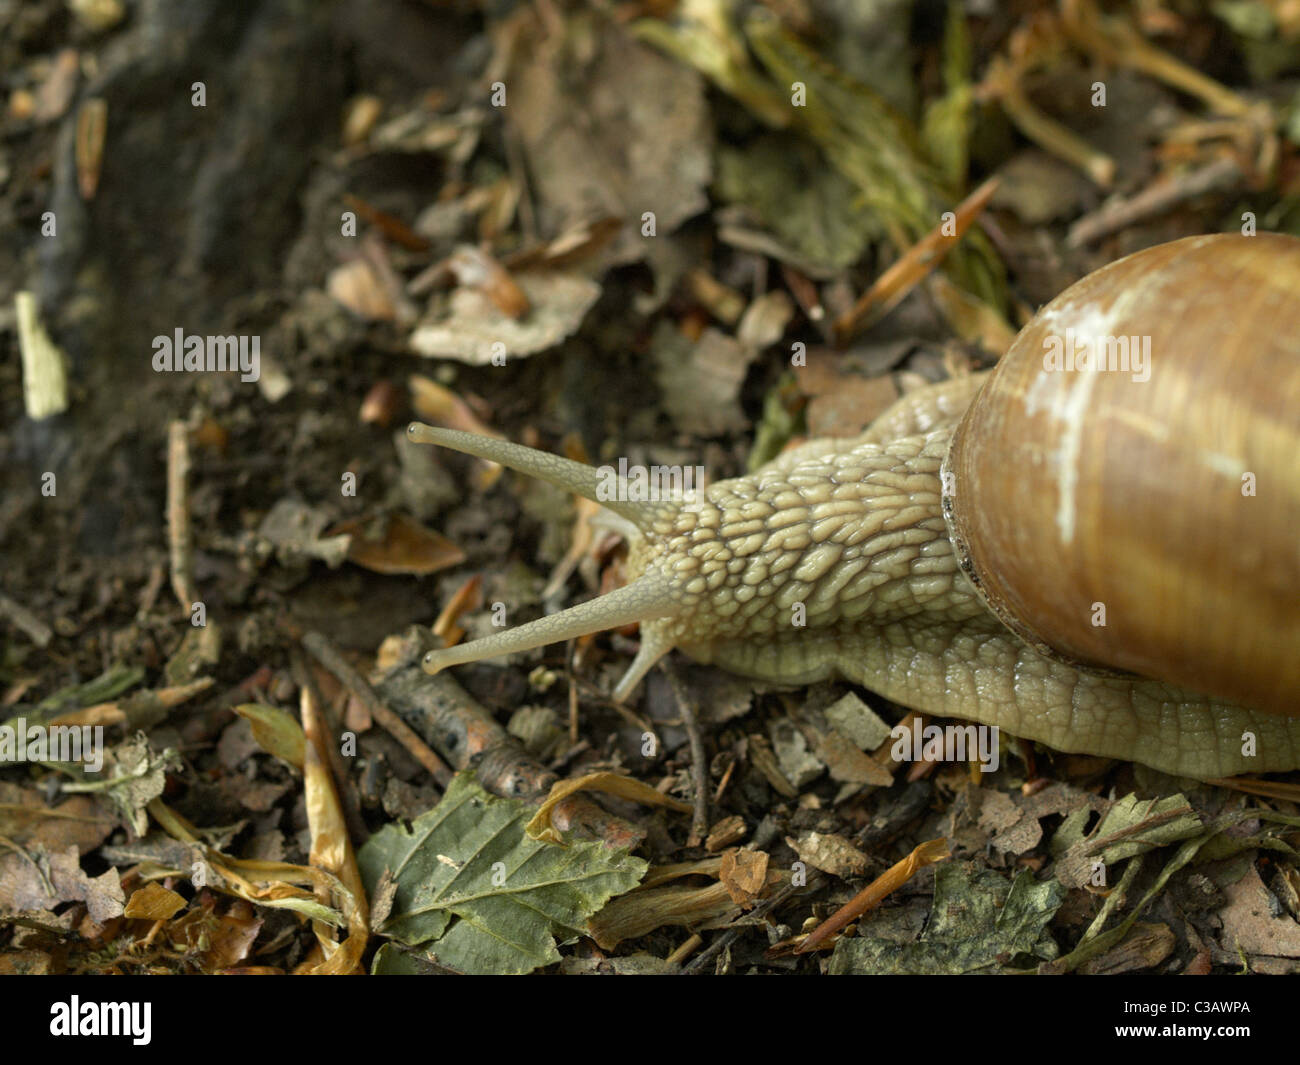 Forest slug Stock Photo